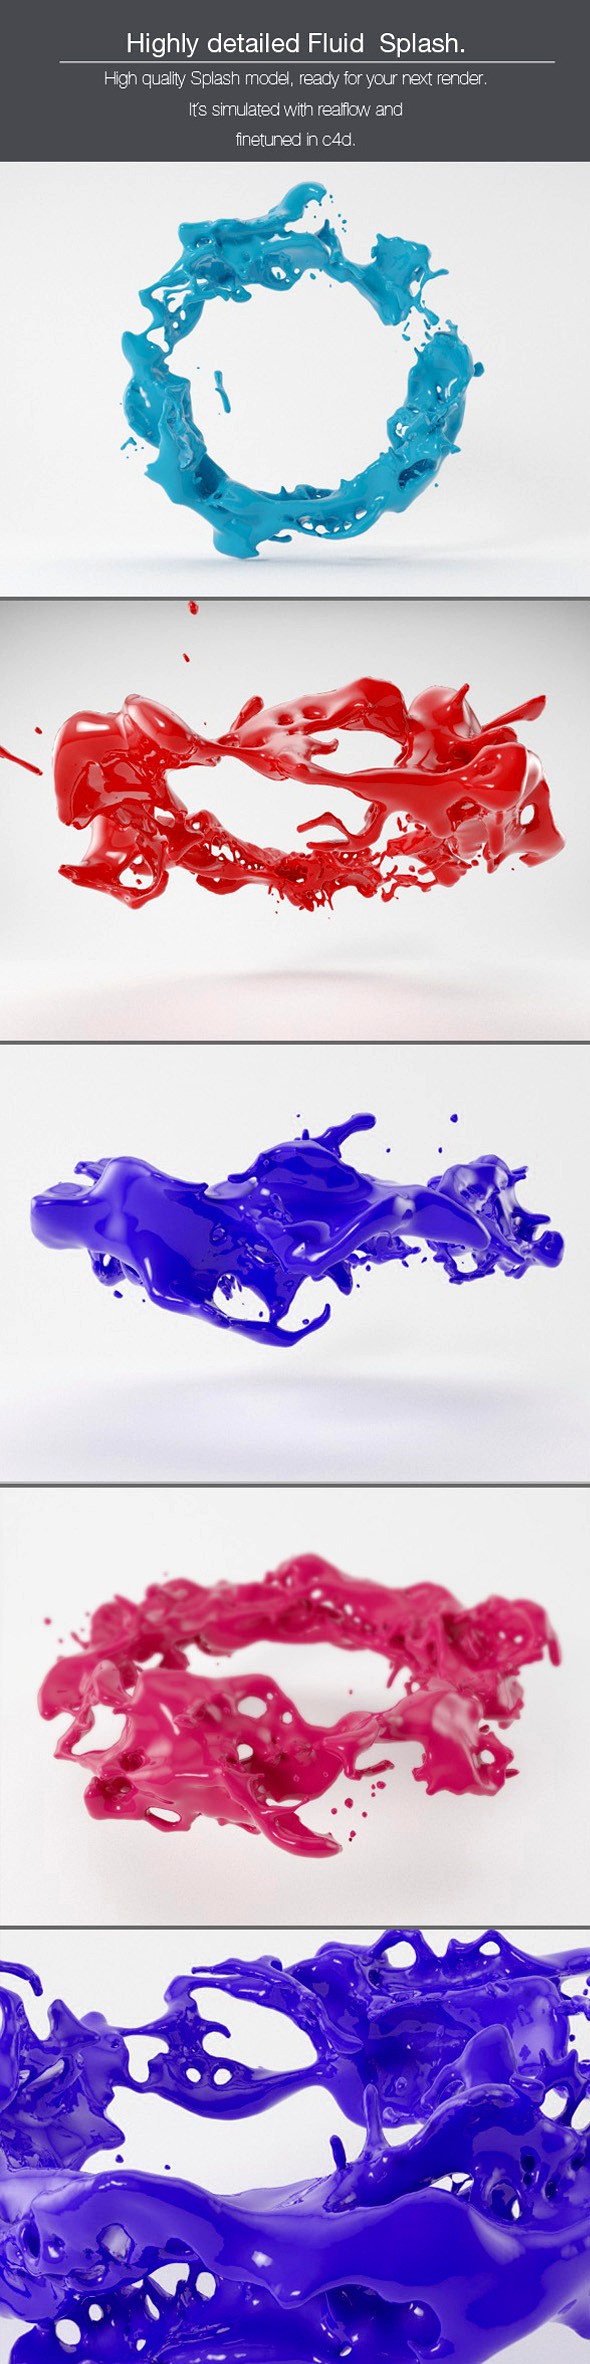 Highly Detailed Paint Splash V4.1